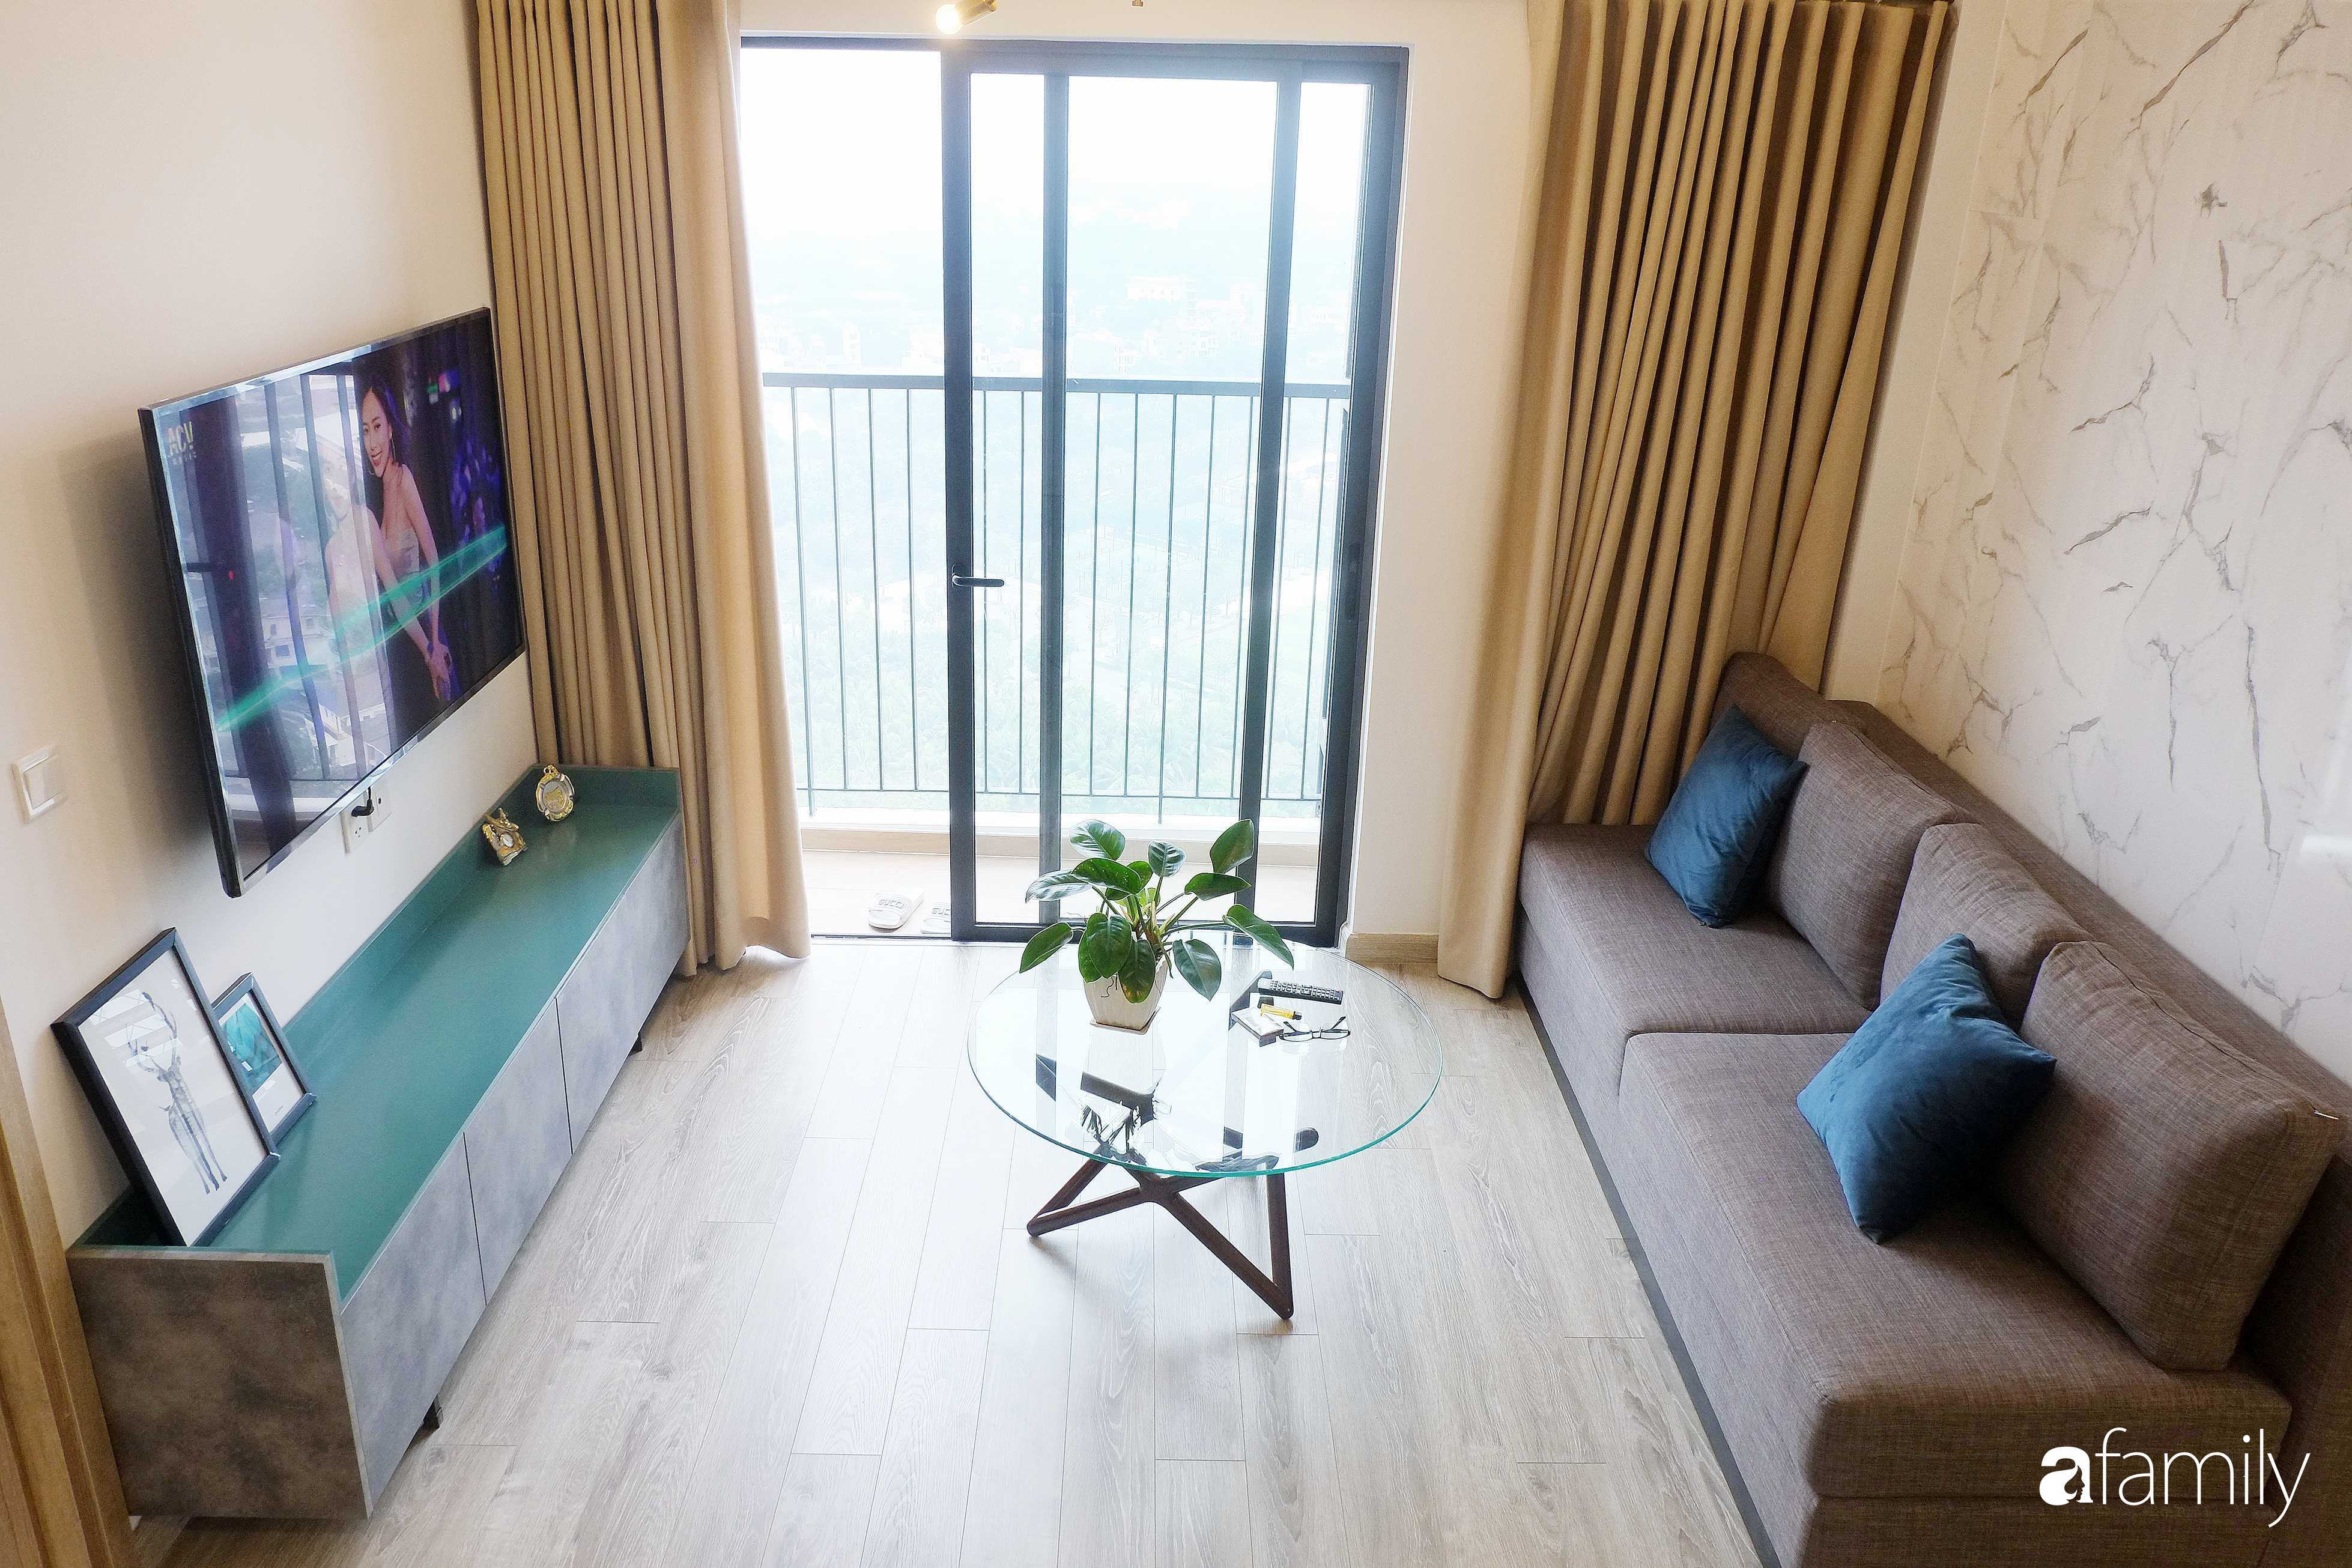 Căn hộ 69m² được thiết kế lấy cảm hứng homestay tối giản với chi phí hoàn thiện 142 triệu đồng ở Hà Nội - Ảnh 1.